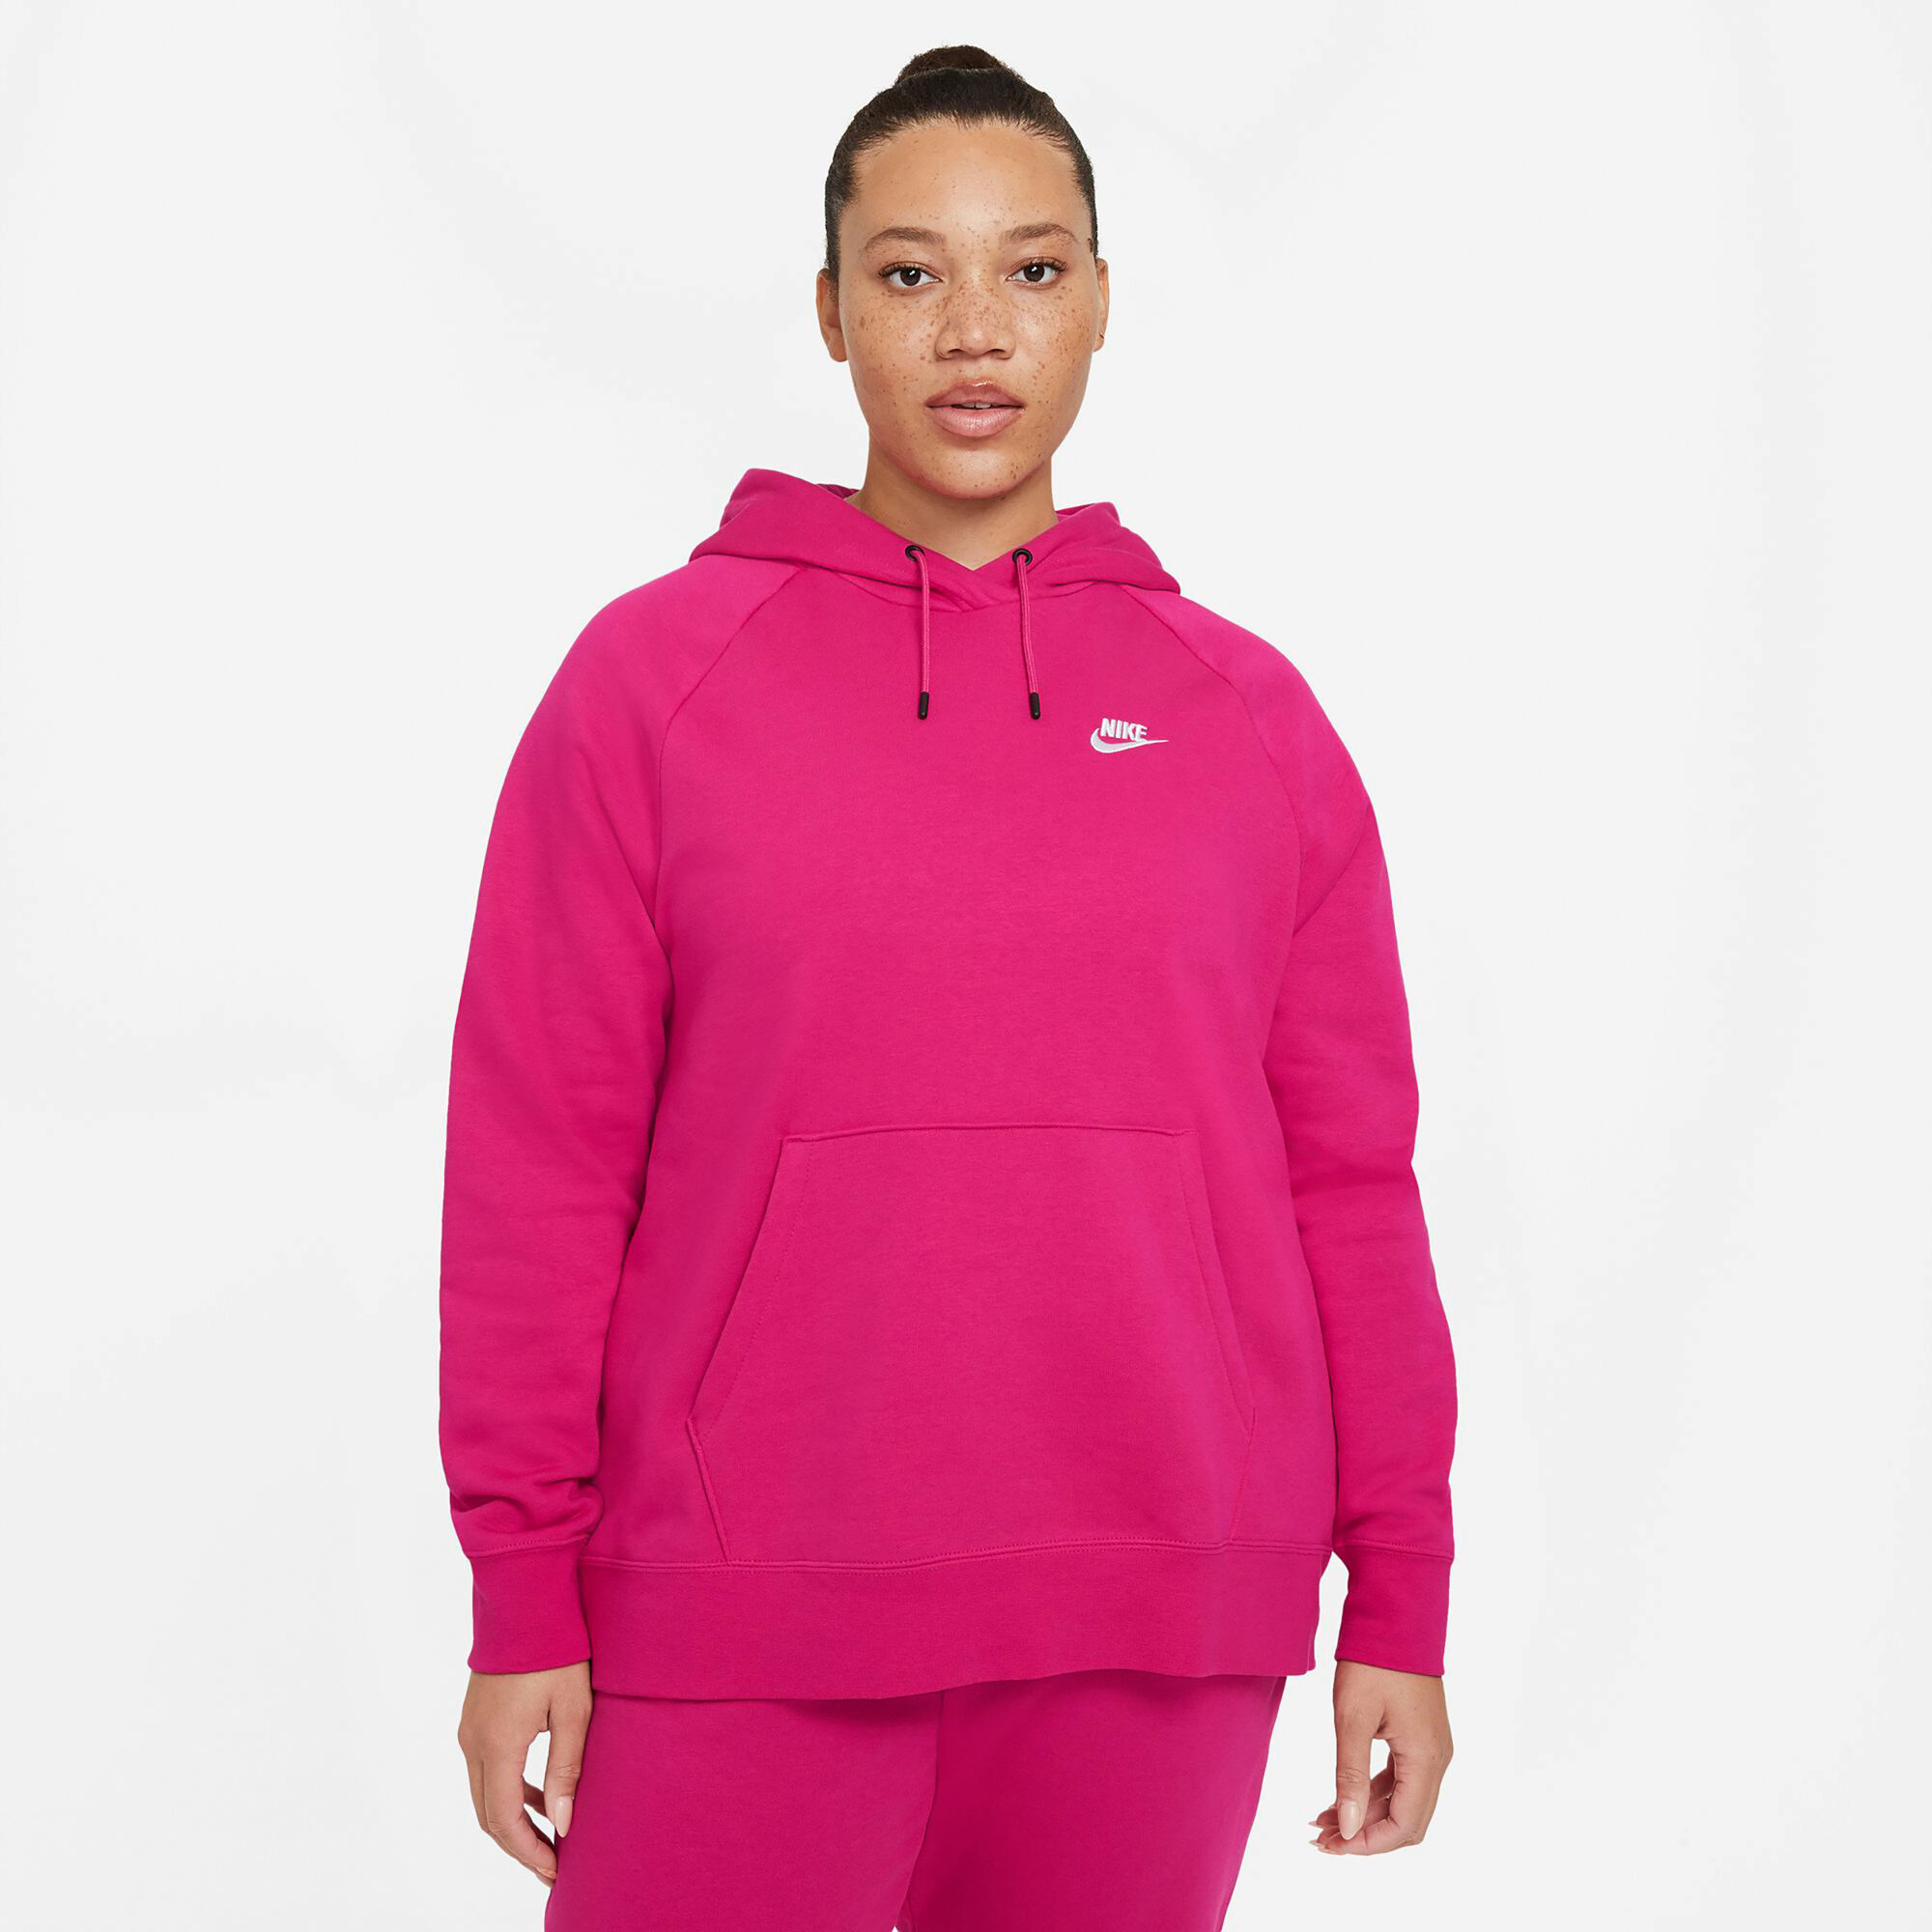 buy Nike Sportswear Essential Plus Size Hoody Women - Pink, White ...